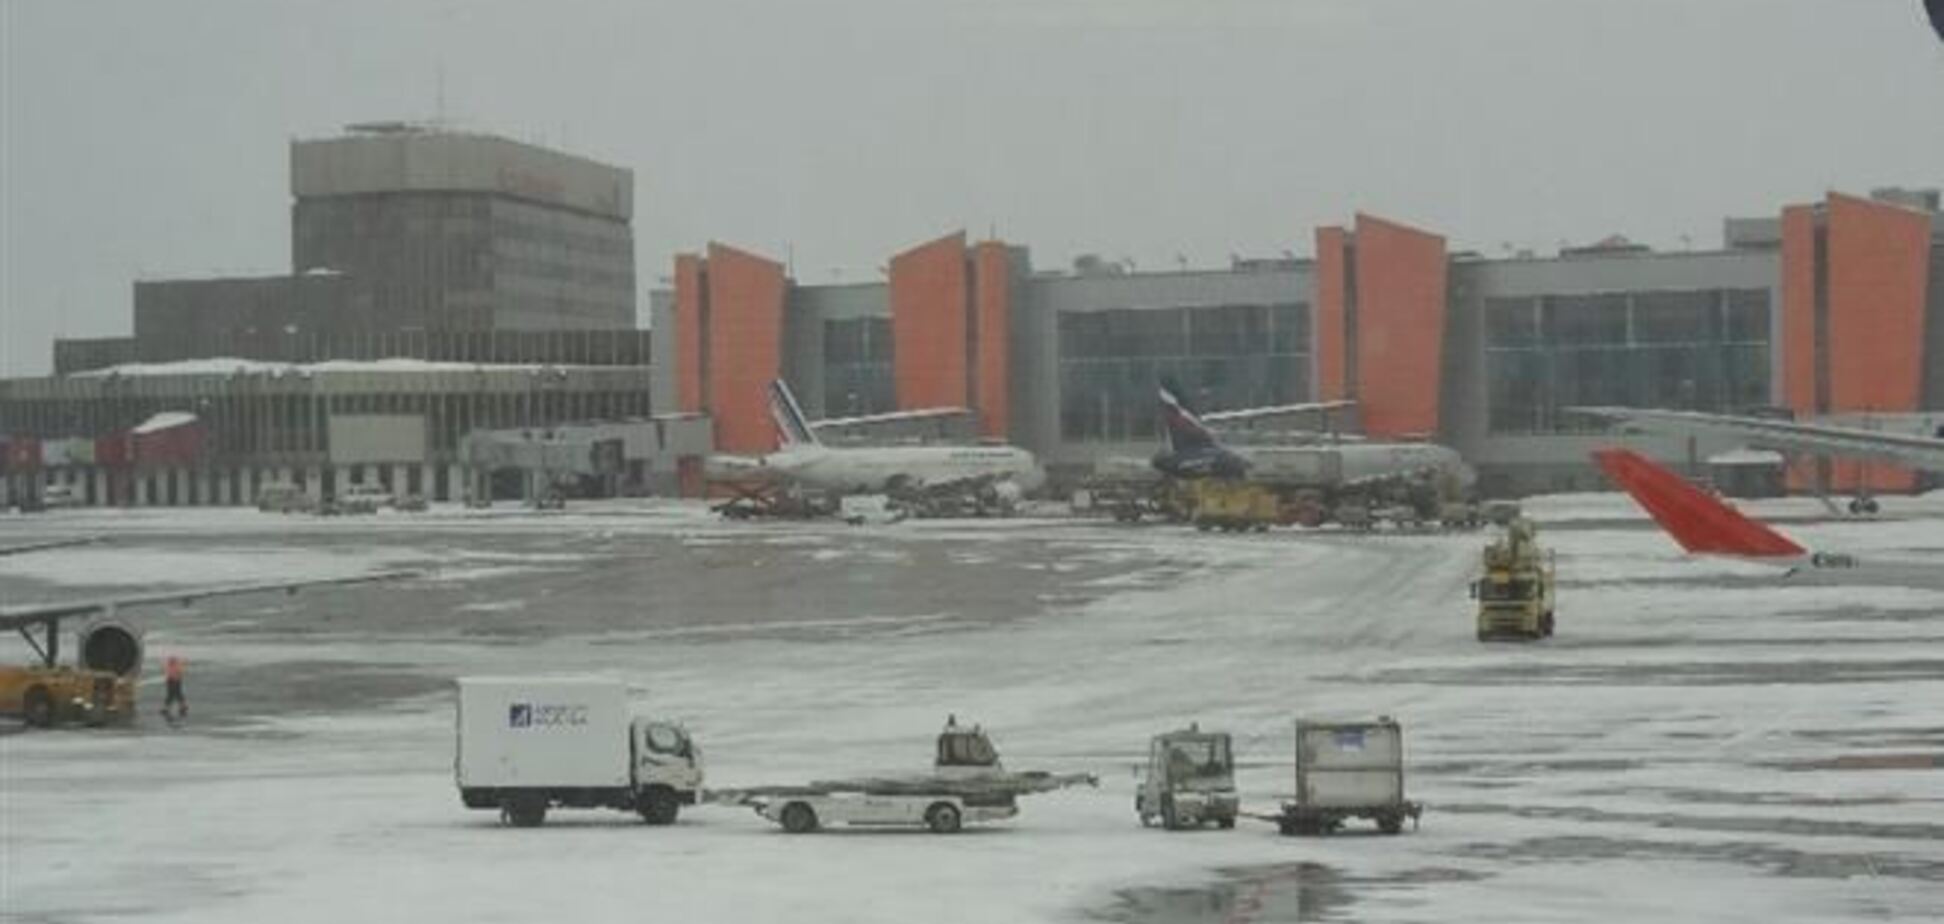 Рейсы в аэропорту 'Шереметьево' задерживаются из-за снега, а не корейского самолета